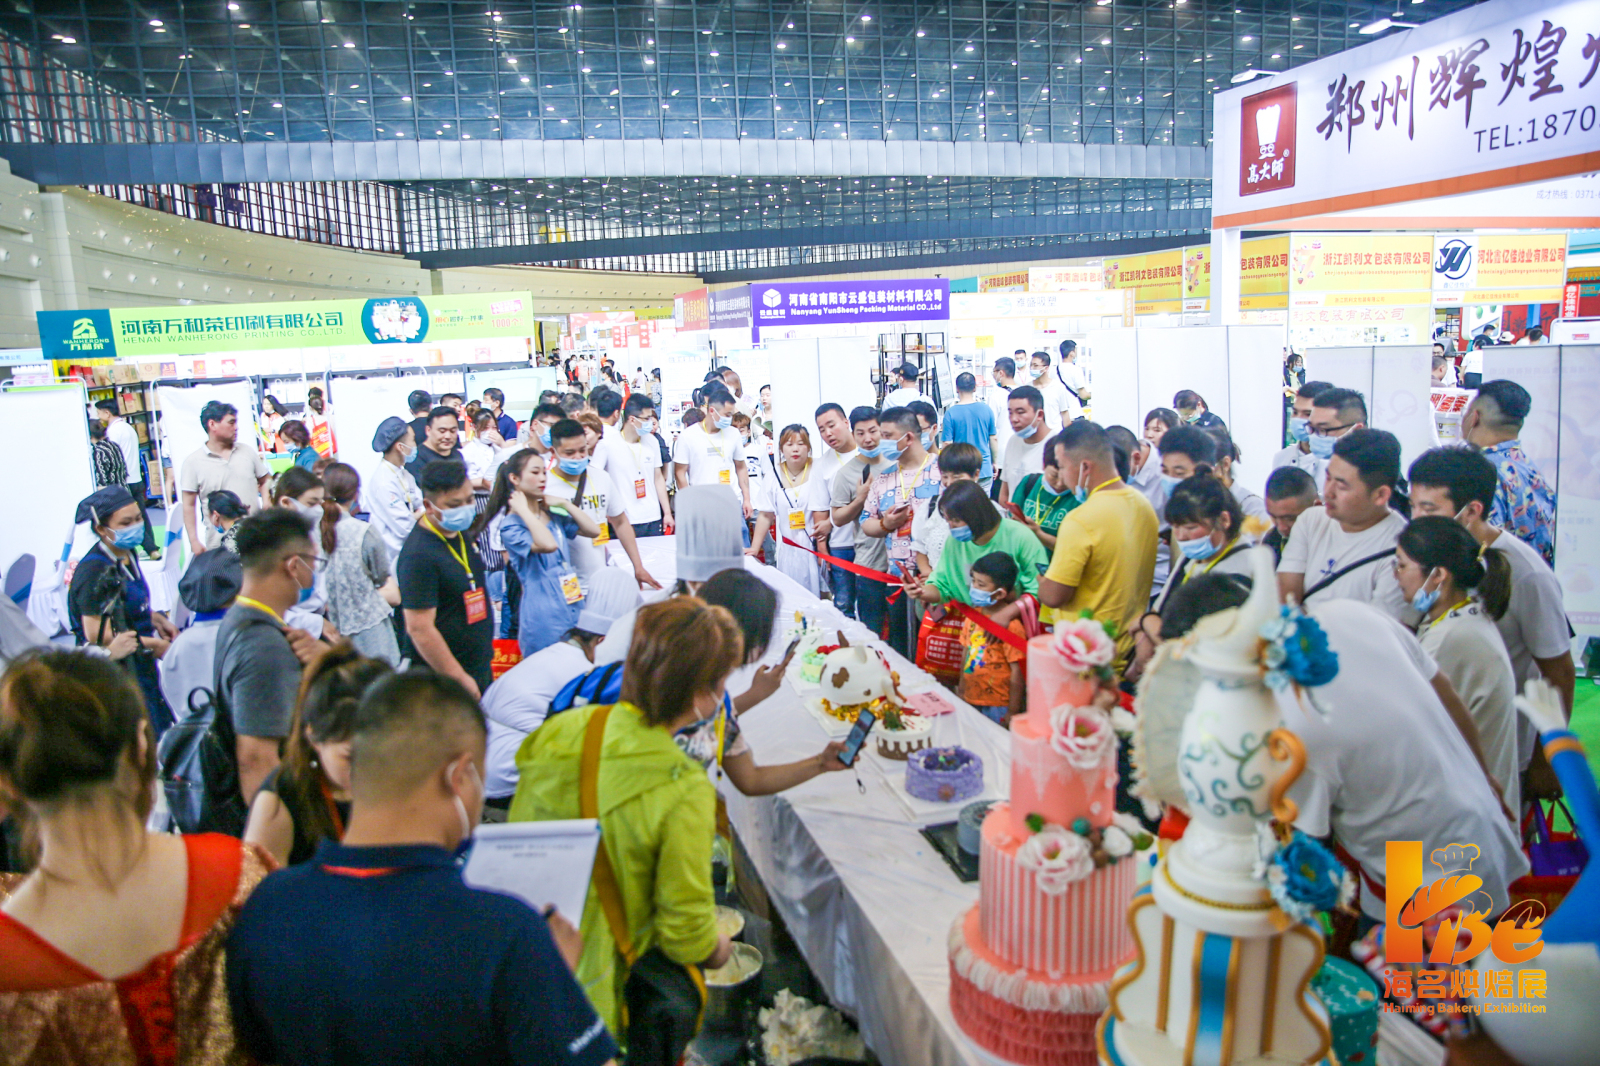 2022第15届郑州烘焙展览会